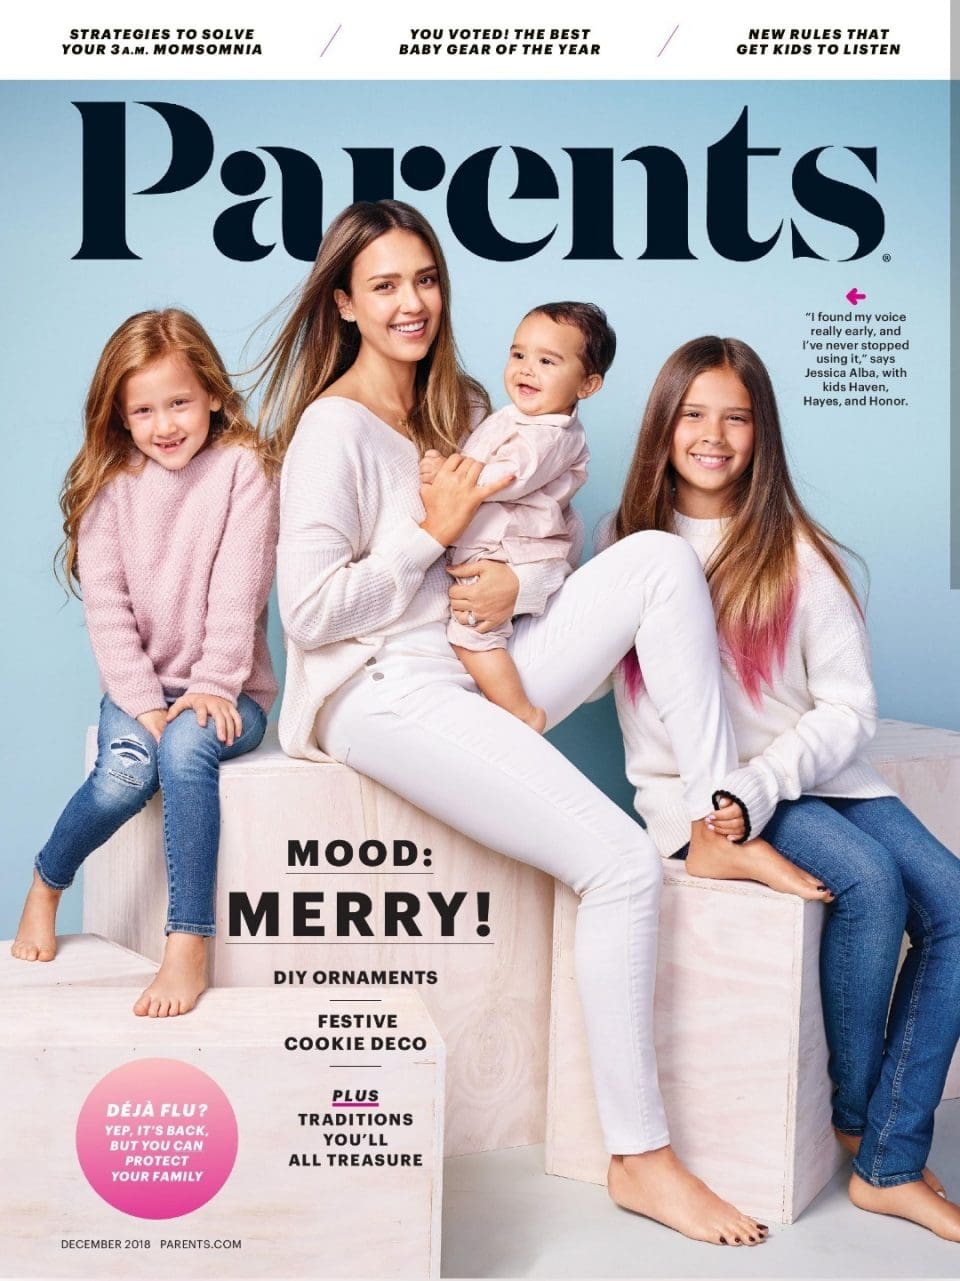 Parents Dec 2018 Mastheads Editorial Calendars